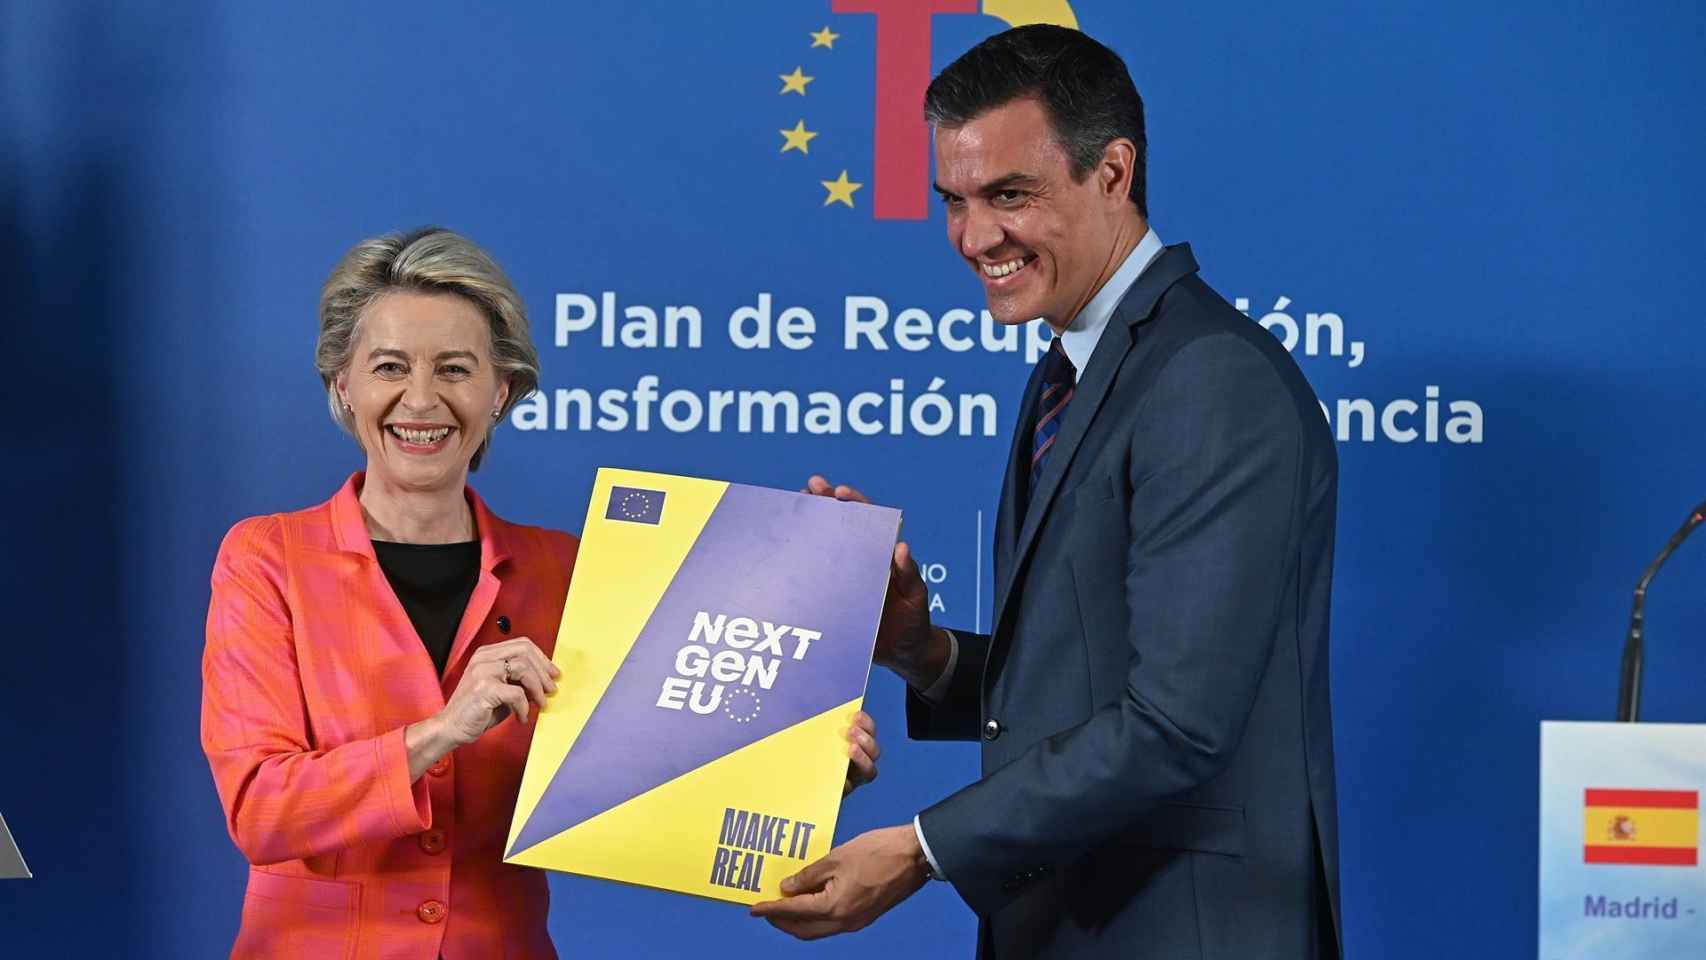 Ursula von der Leyen, presidenta de la Comisión Europea, y Pedro Sánchez, presidente del Gobierno, con el Plan de Recuperación español aprobado por Bruselas.